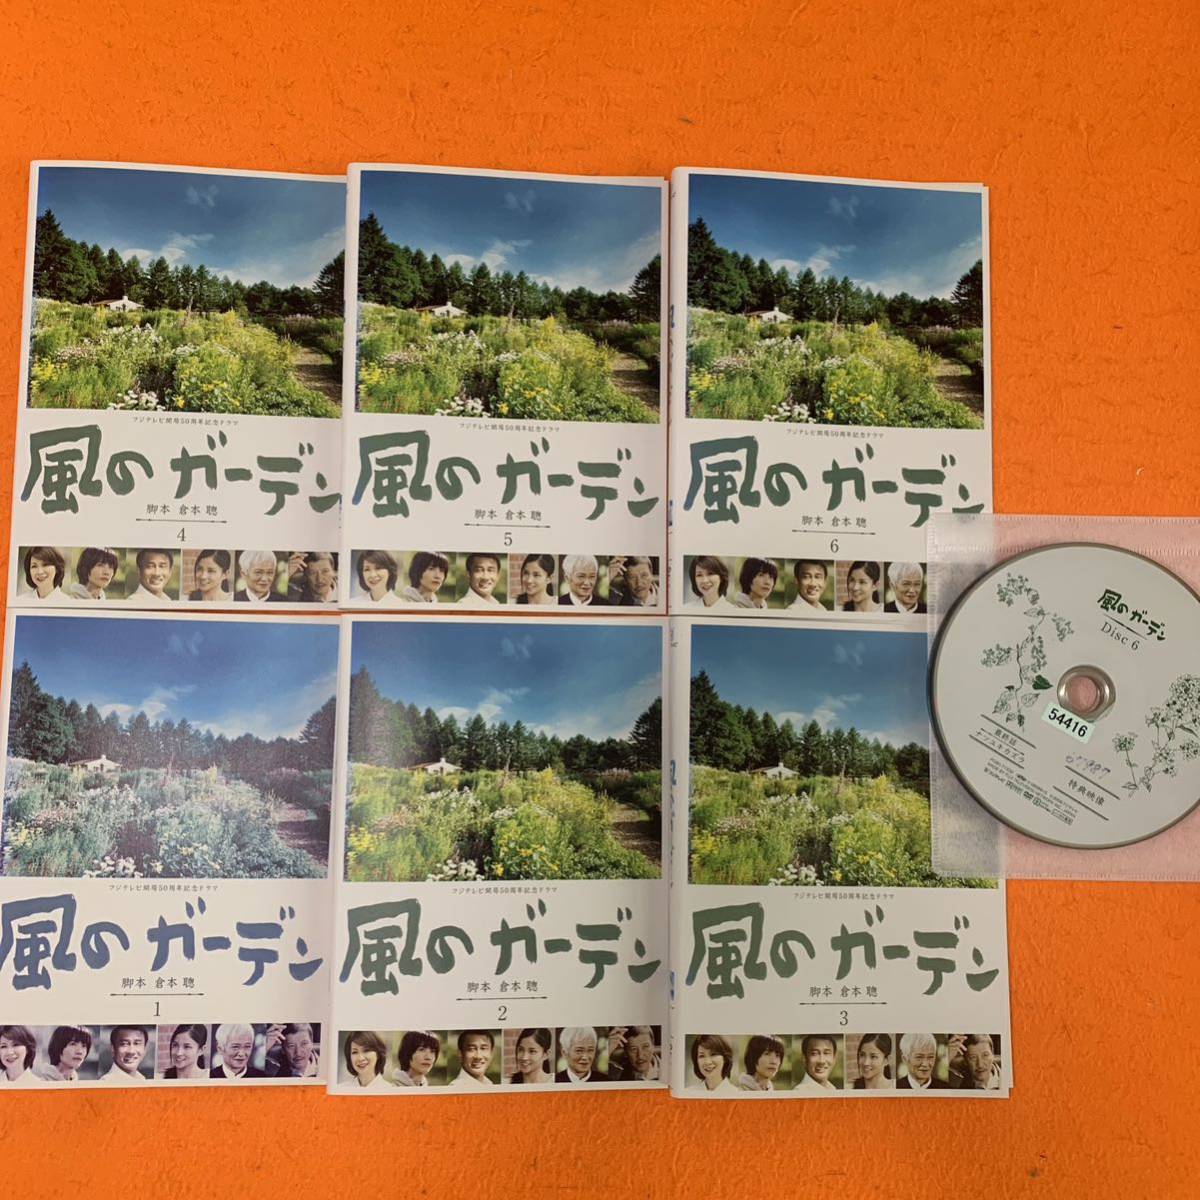 想い出にかわるまで 【全4巻】レンタル版DVD 全巻セット 今井美樹